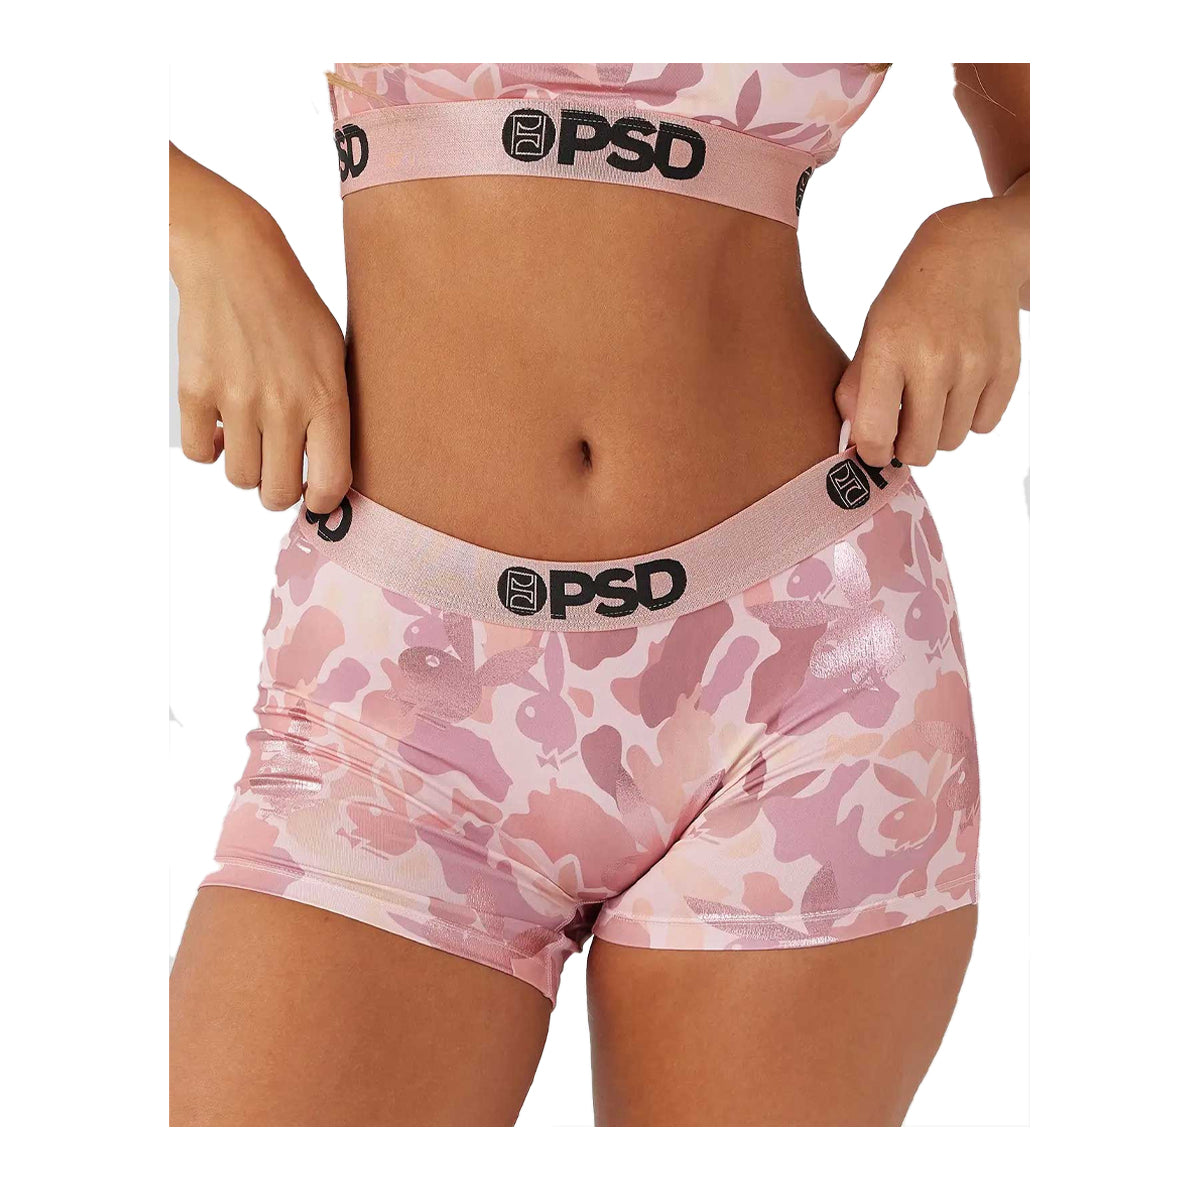 PSD Womens Playboy Rose Gold Boy Short 123480006-PNK Pink